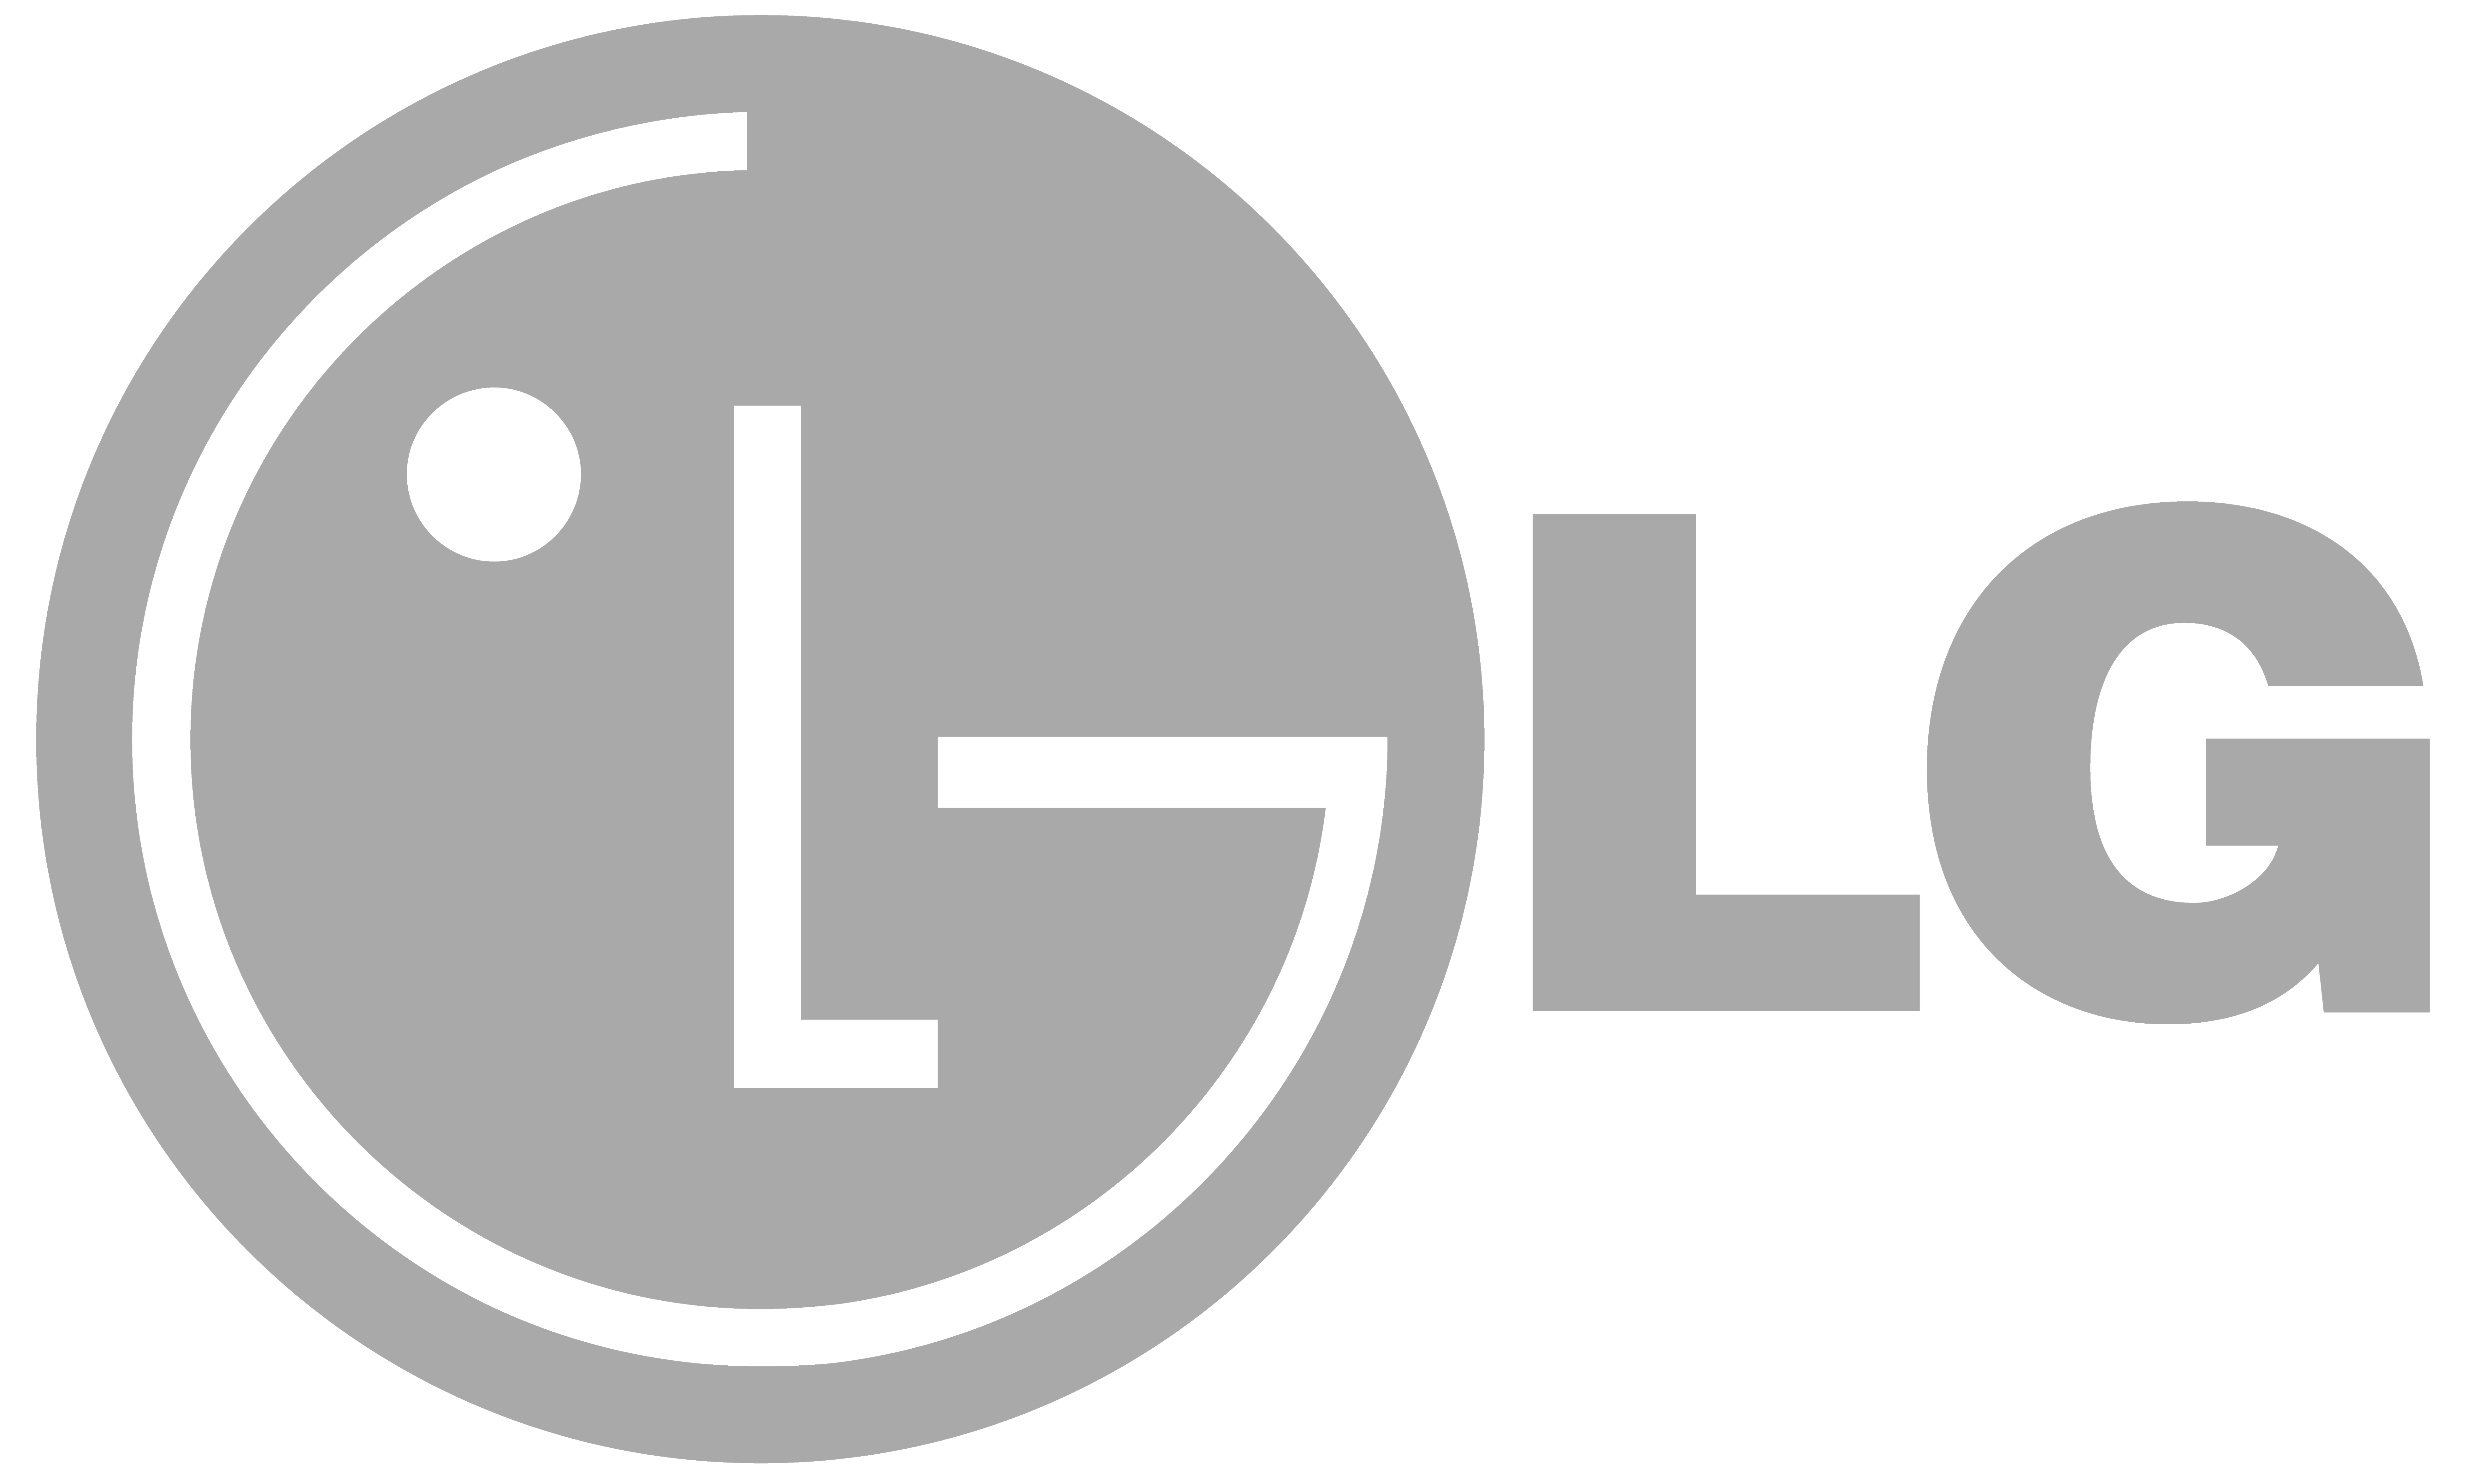 lg-1